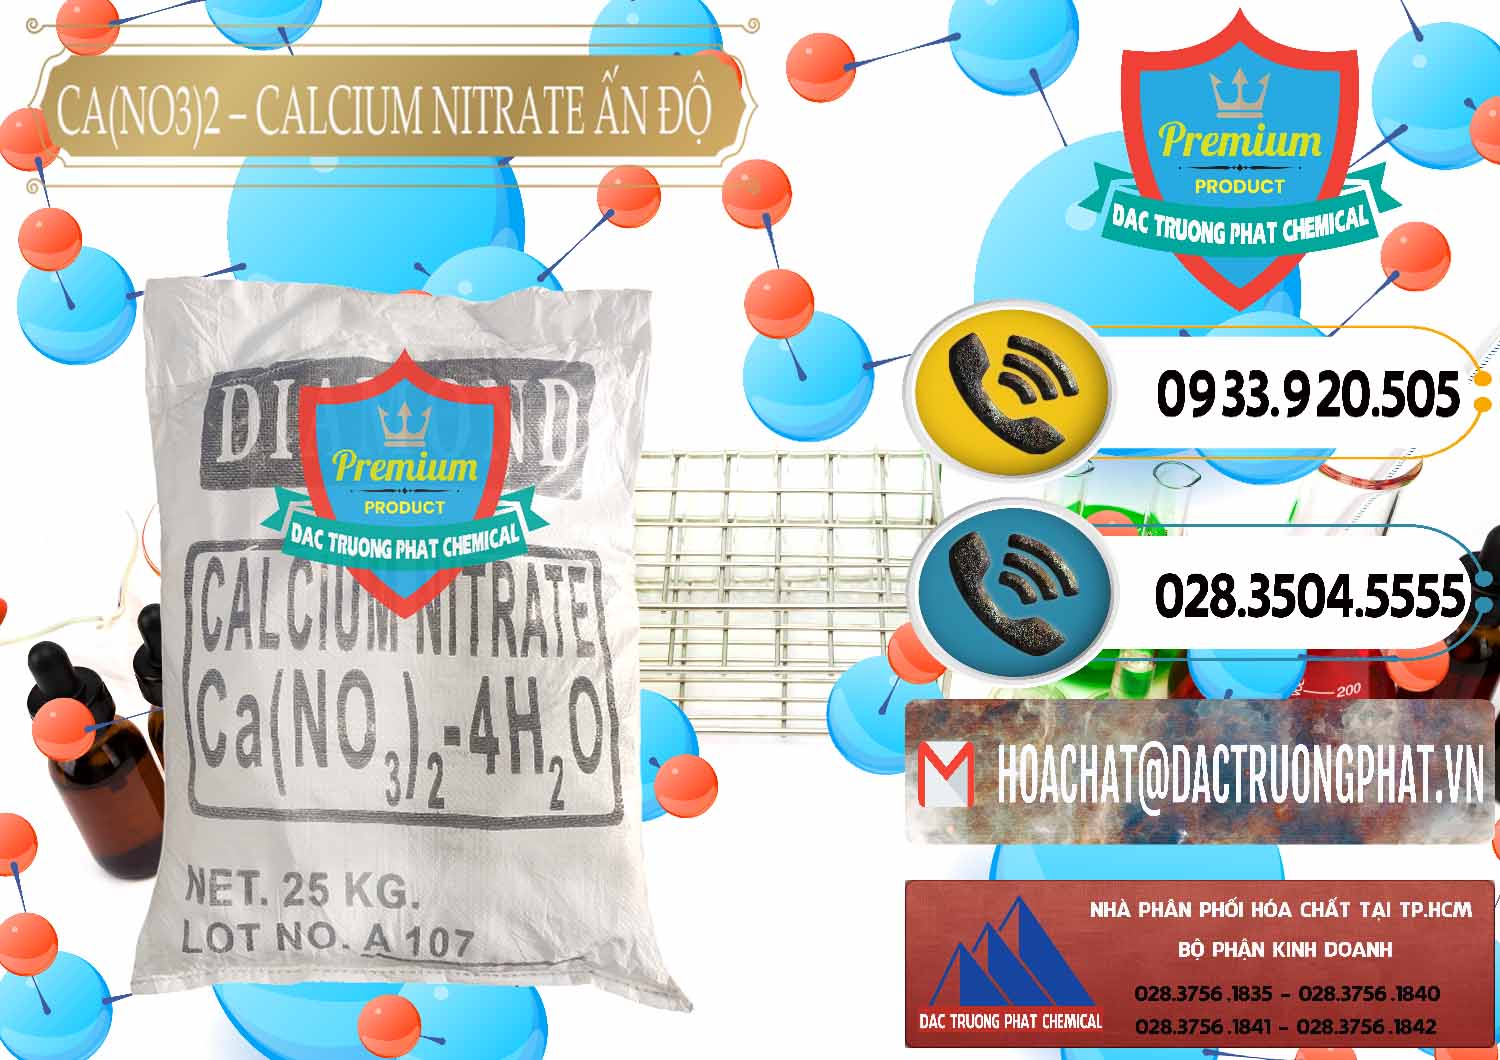 Nơi bán - cung cấp CA(NO3)2 – Calcium Nitrate Ấn Độ India - 0038 - Cty nhập khẩu - cung cấp hóa chất tại TP.HCM - hoachatdetnhuom.vn